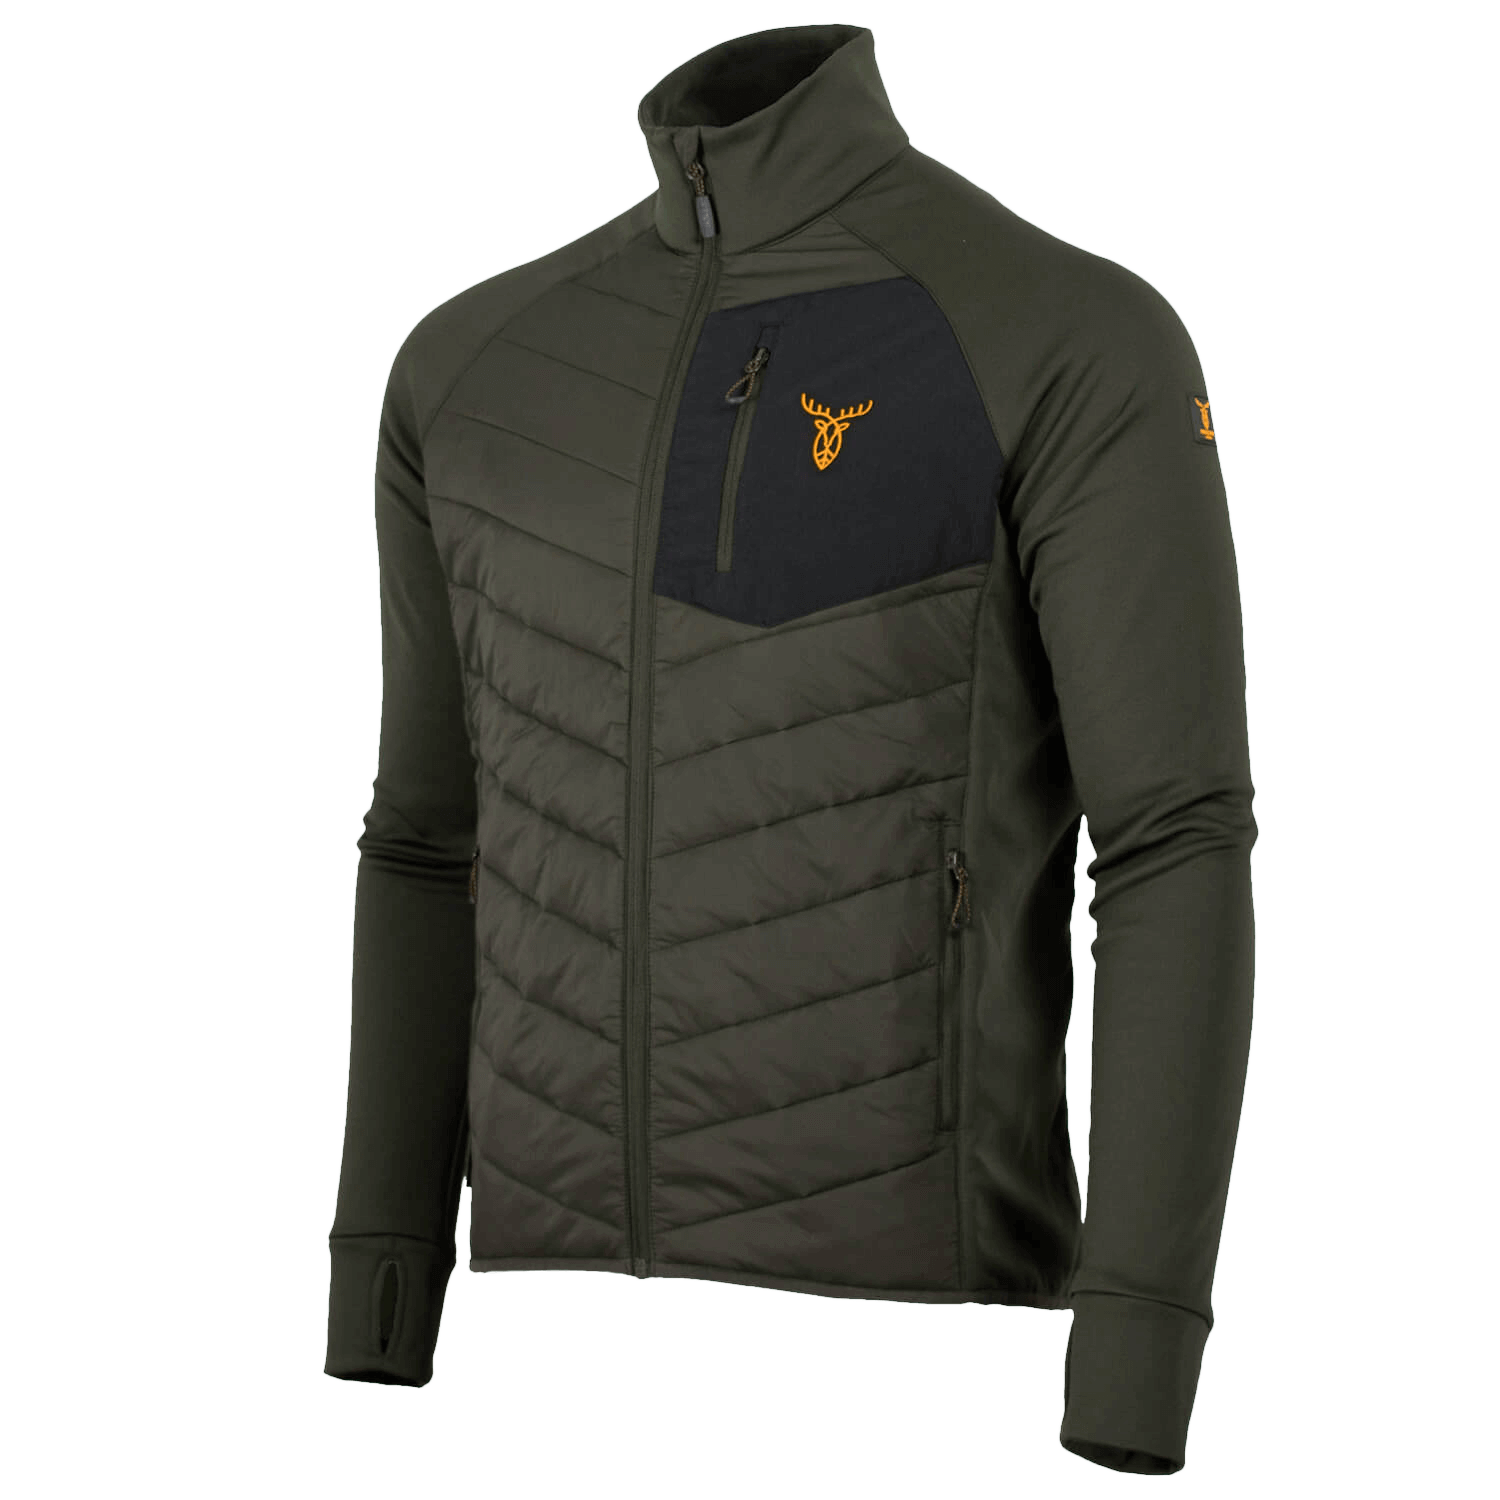 Pirscher Gear Hybrid-Fleece Jacke - Geschenke für Jäger